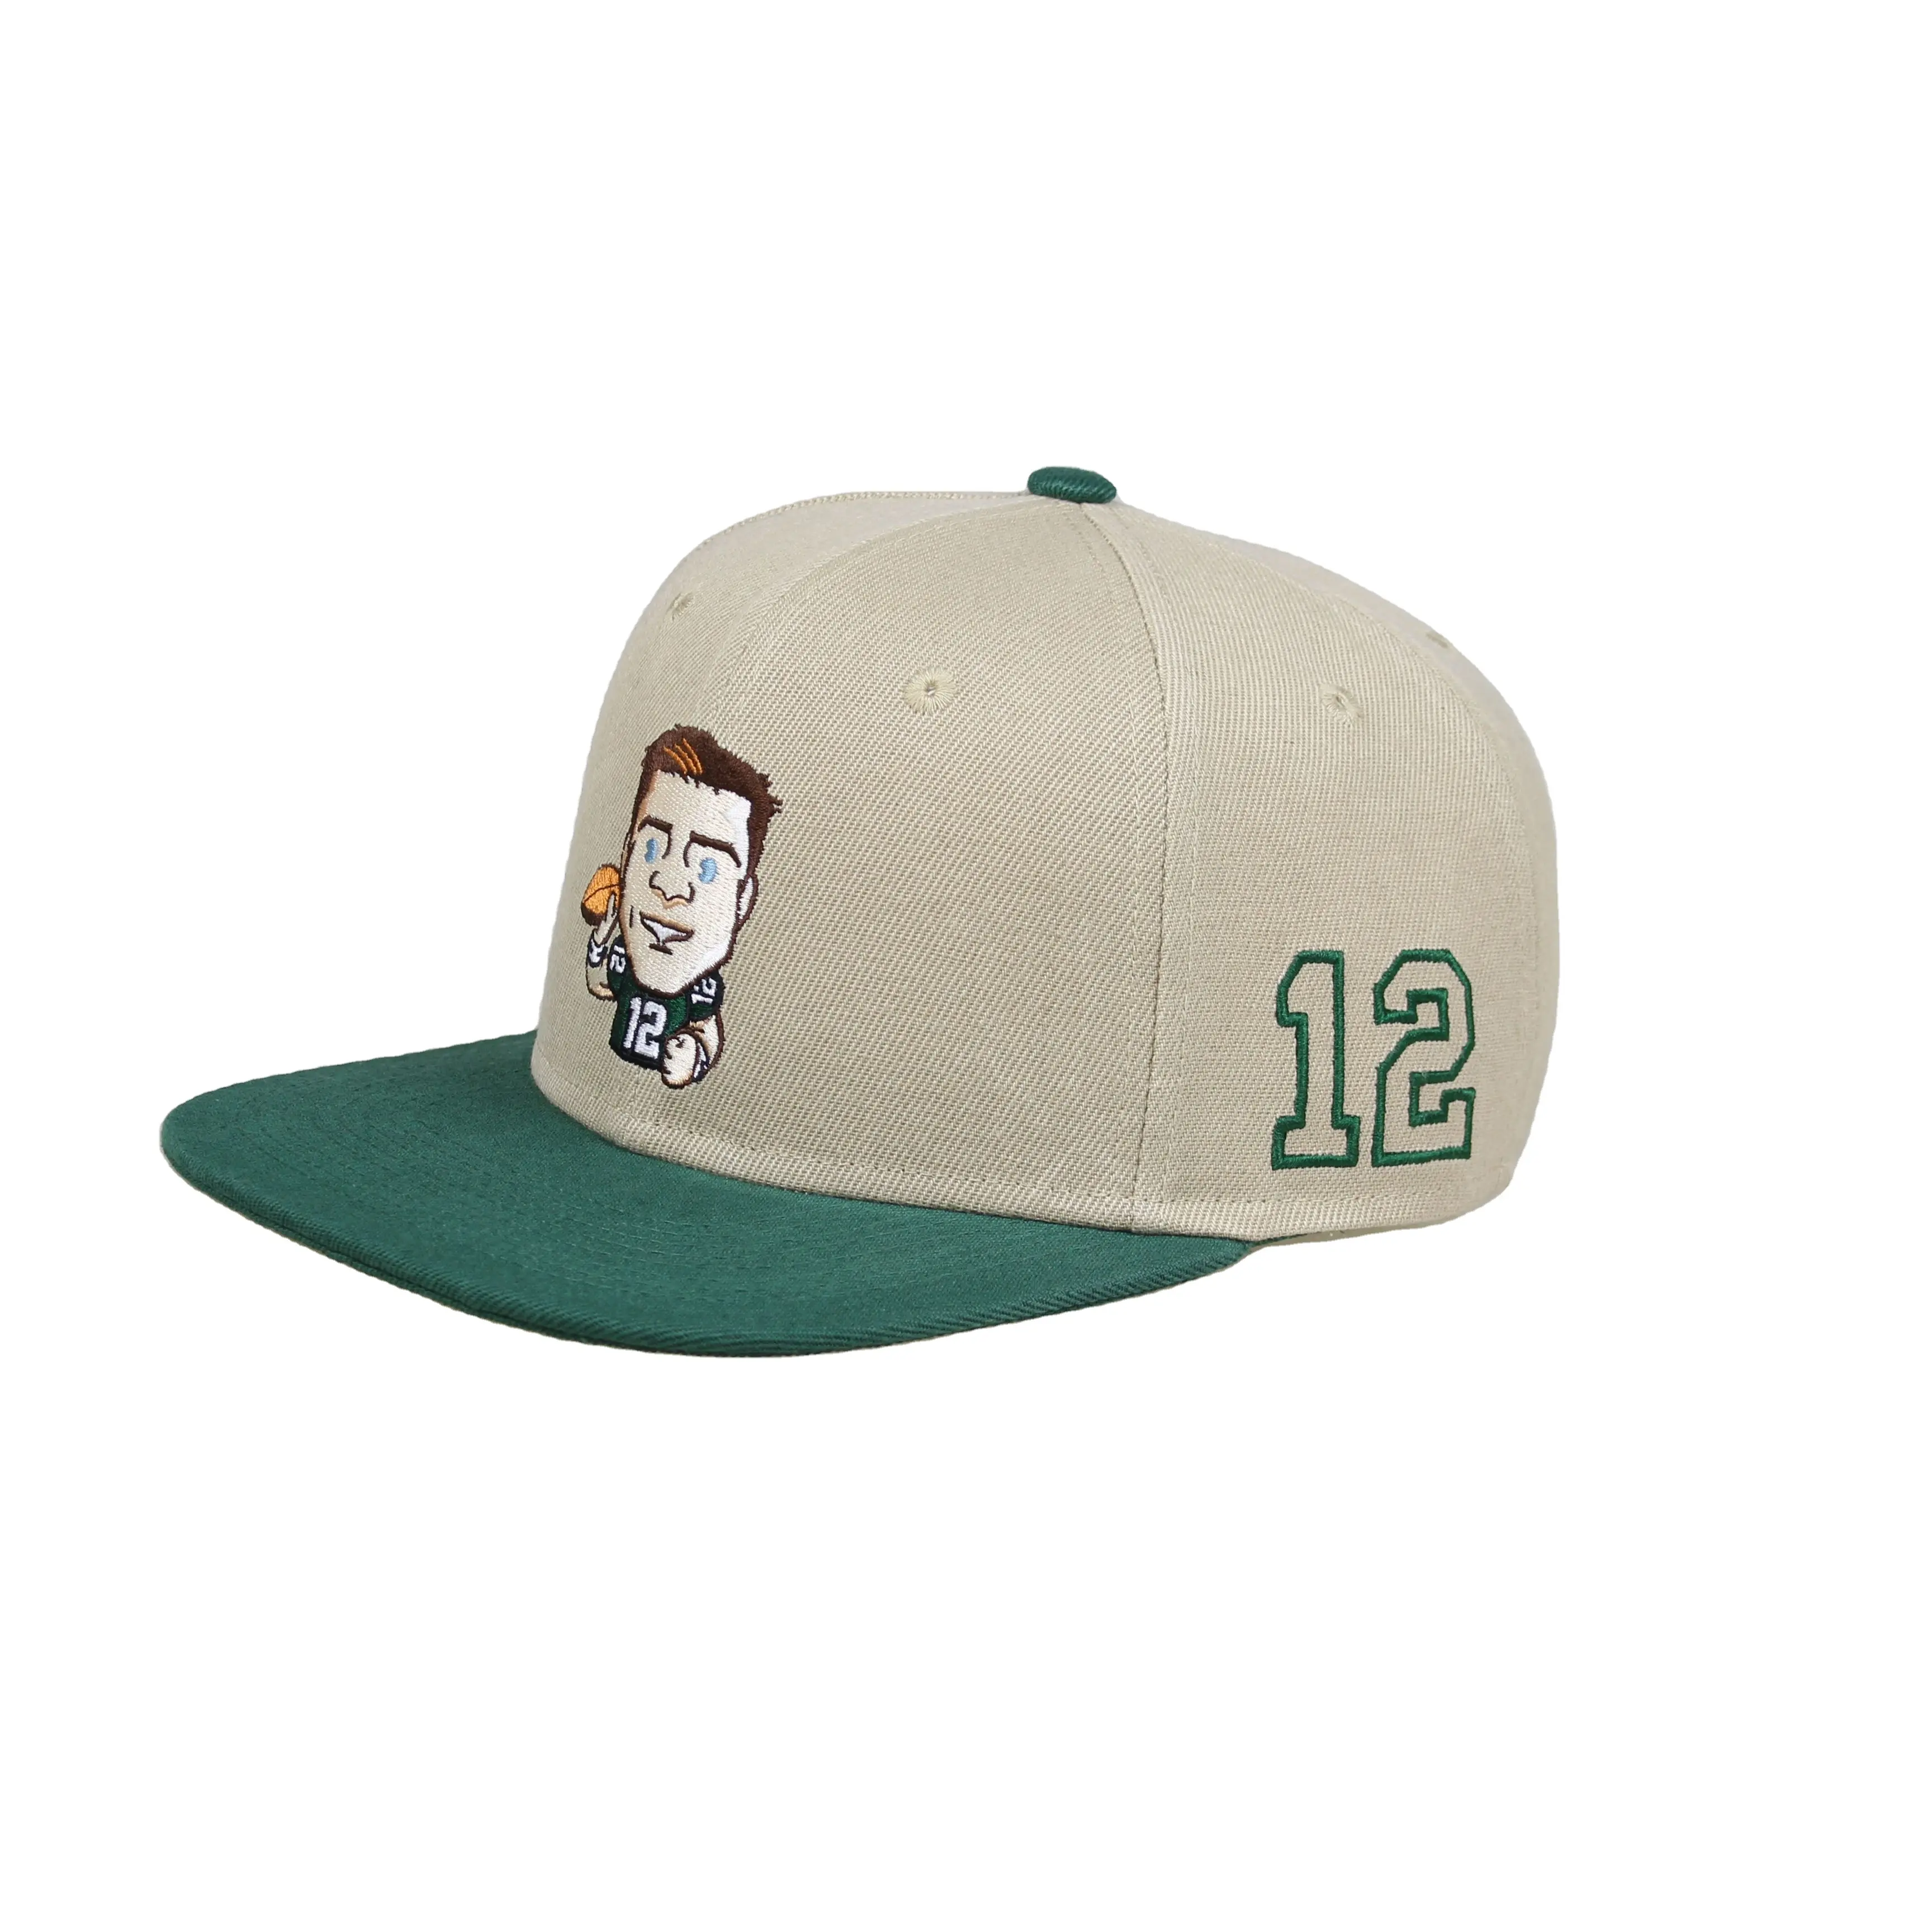 Sport kappe mit flacher Krempe Maßge schneiderte Stickerei Puff Design Slik Print Snapback Cap Hut mit gewebtem Etikett